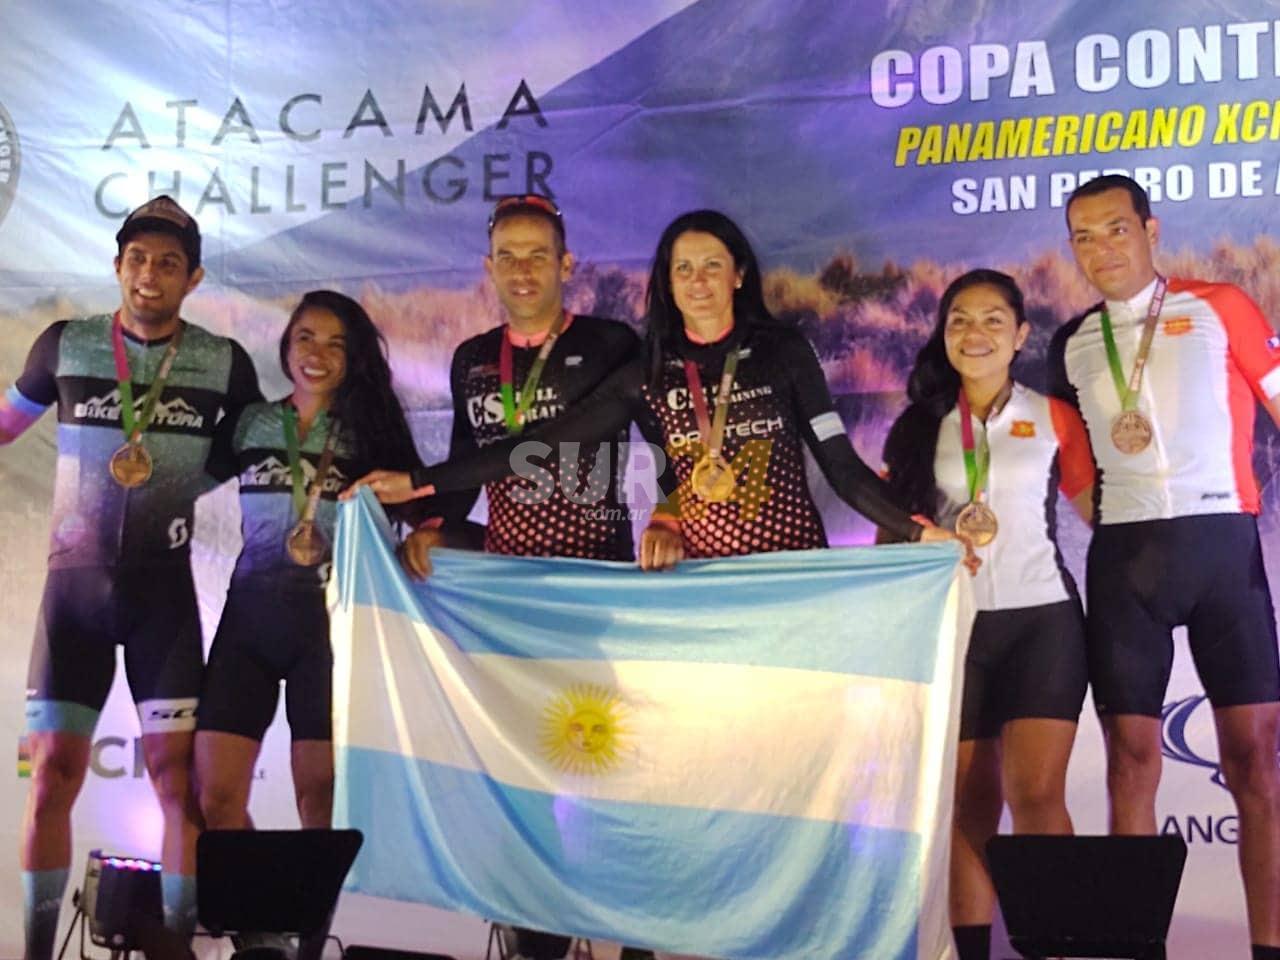 La venadense Corina Butti, junto a Sergio Ramos, ganaron el Panamericano XCM en Atacama